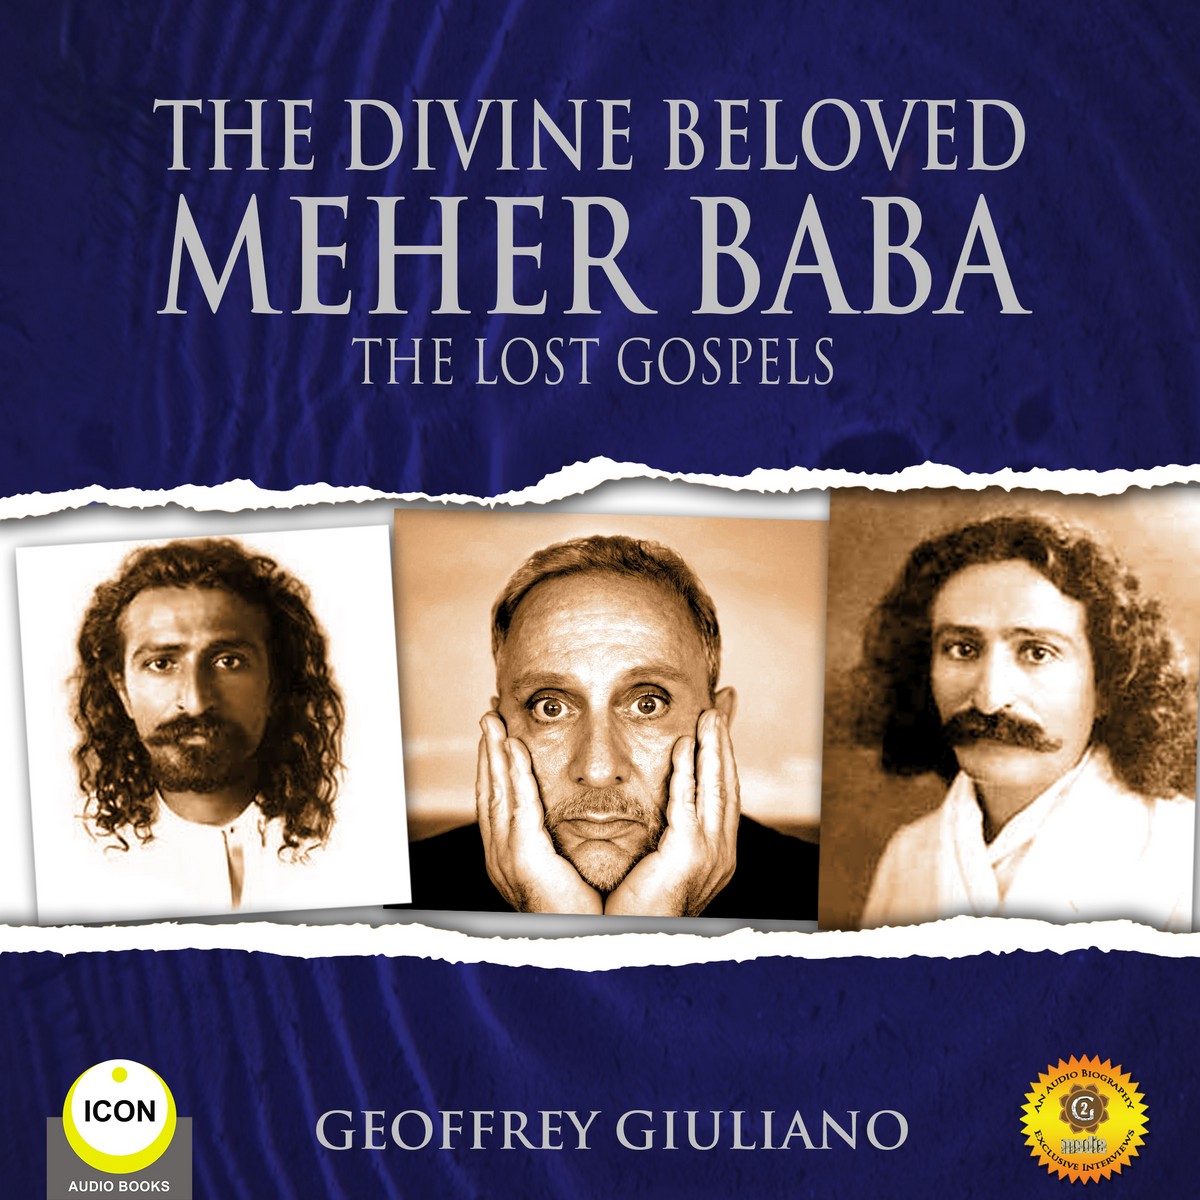 The Divine Beloved Meher Baba – The Lost Gospels